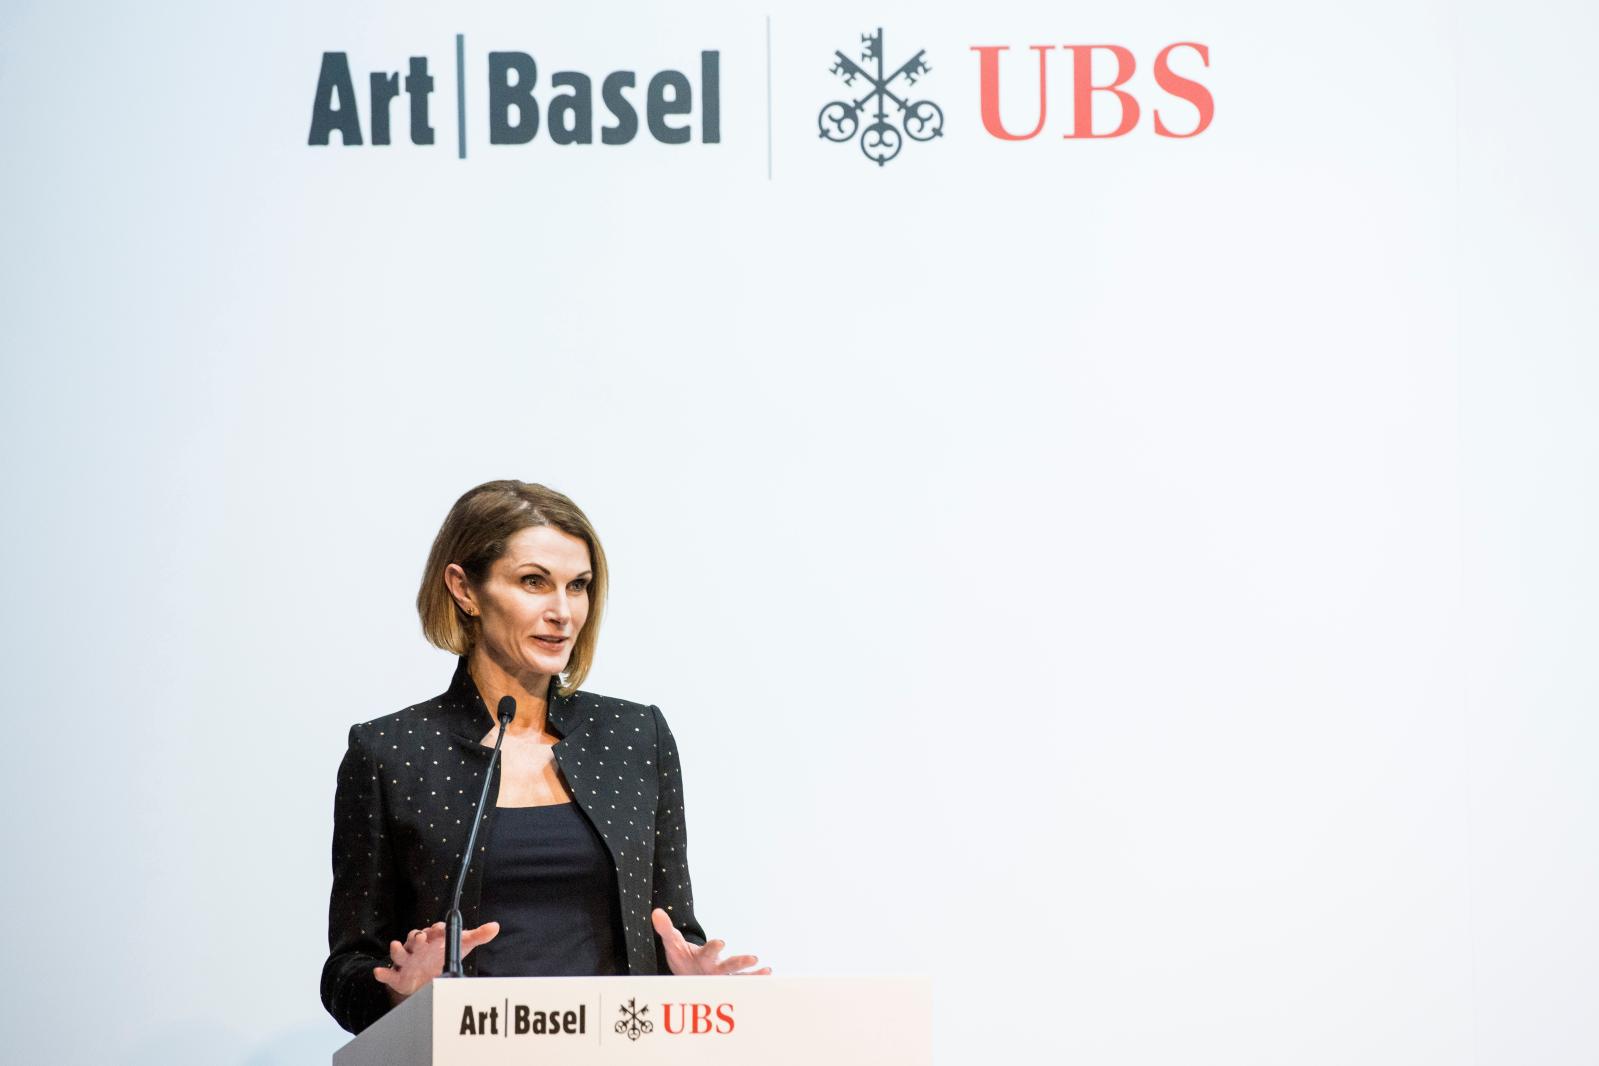 Rapport : Art Basel UBS 2018